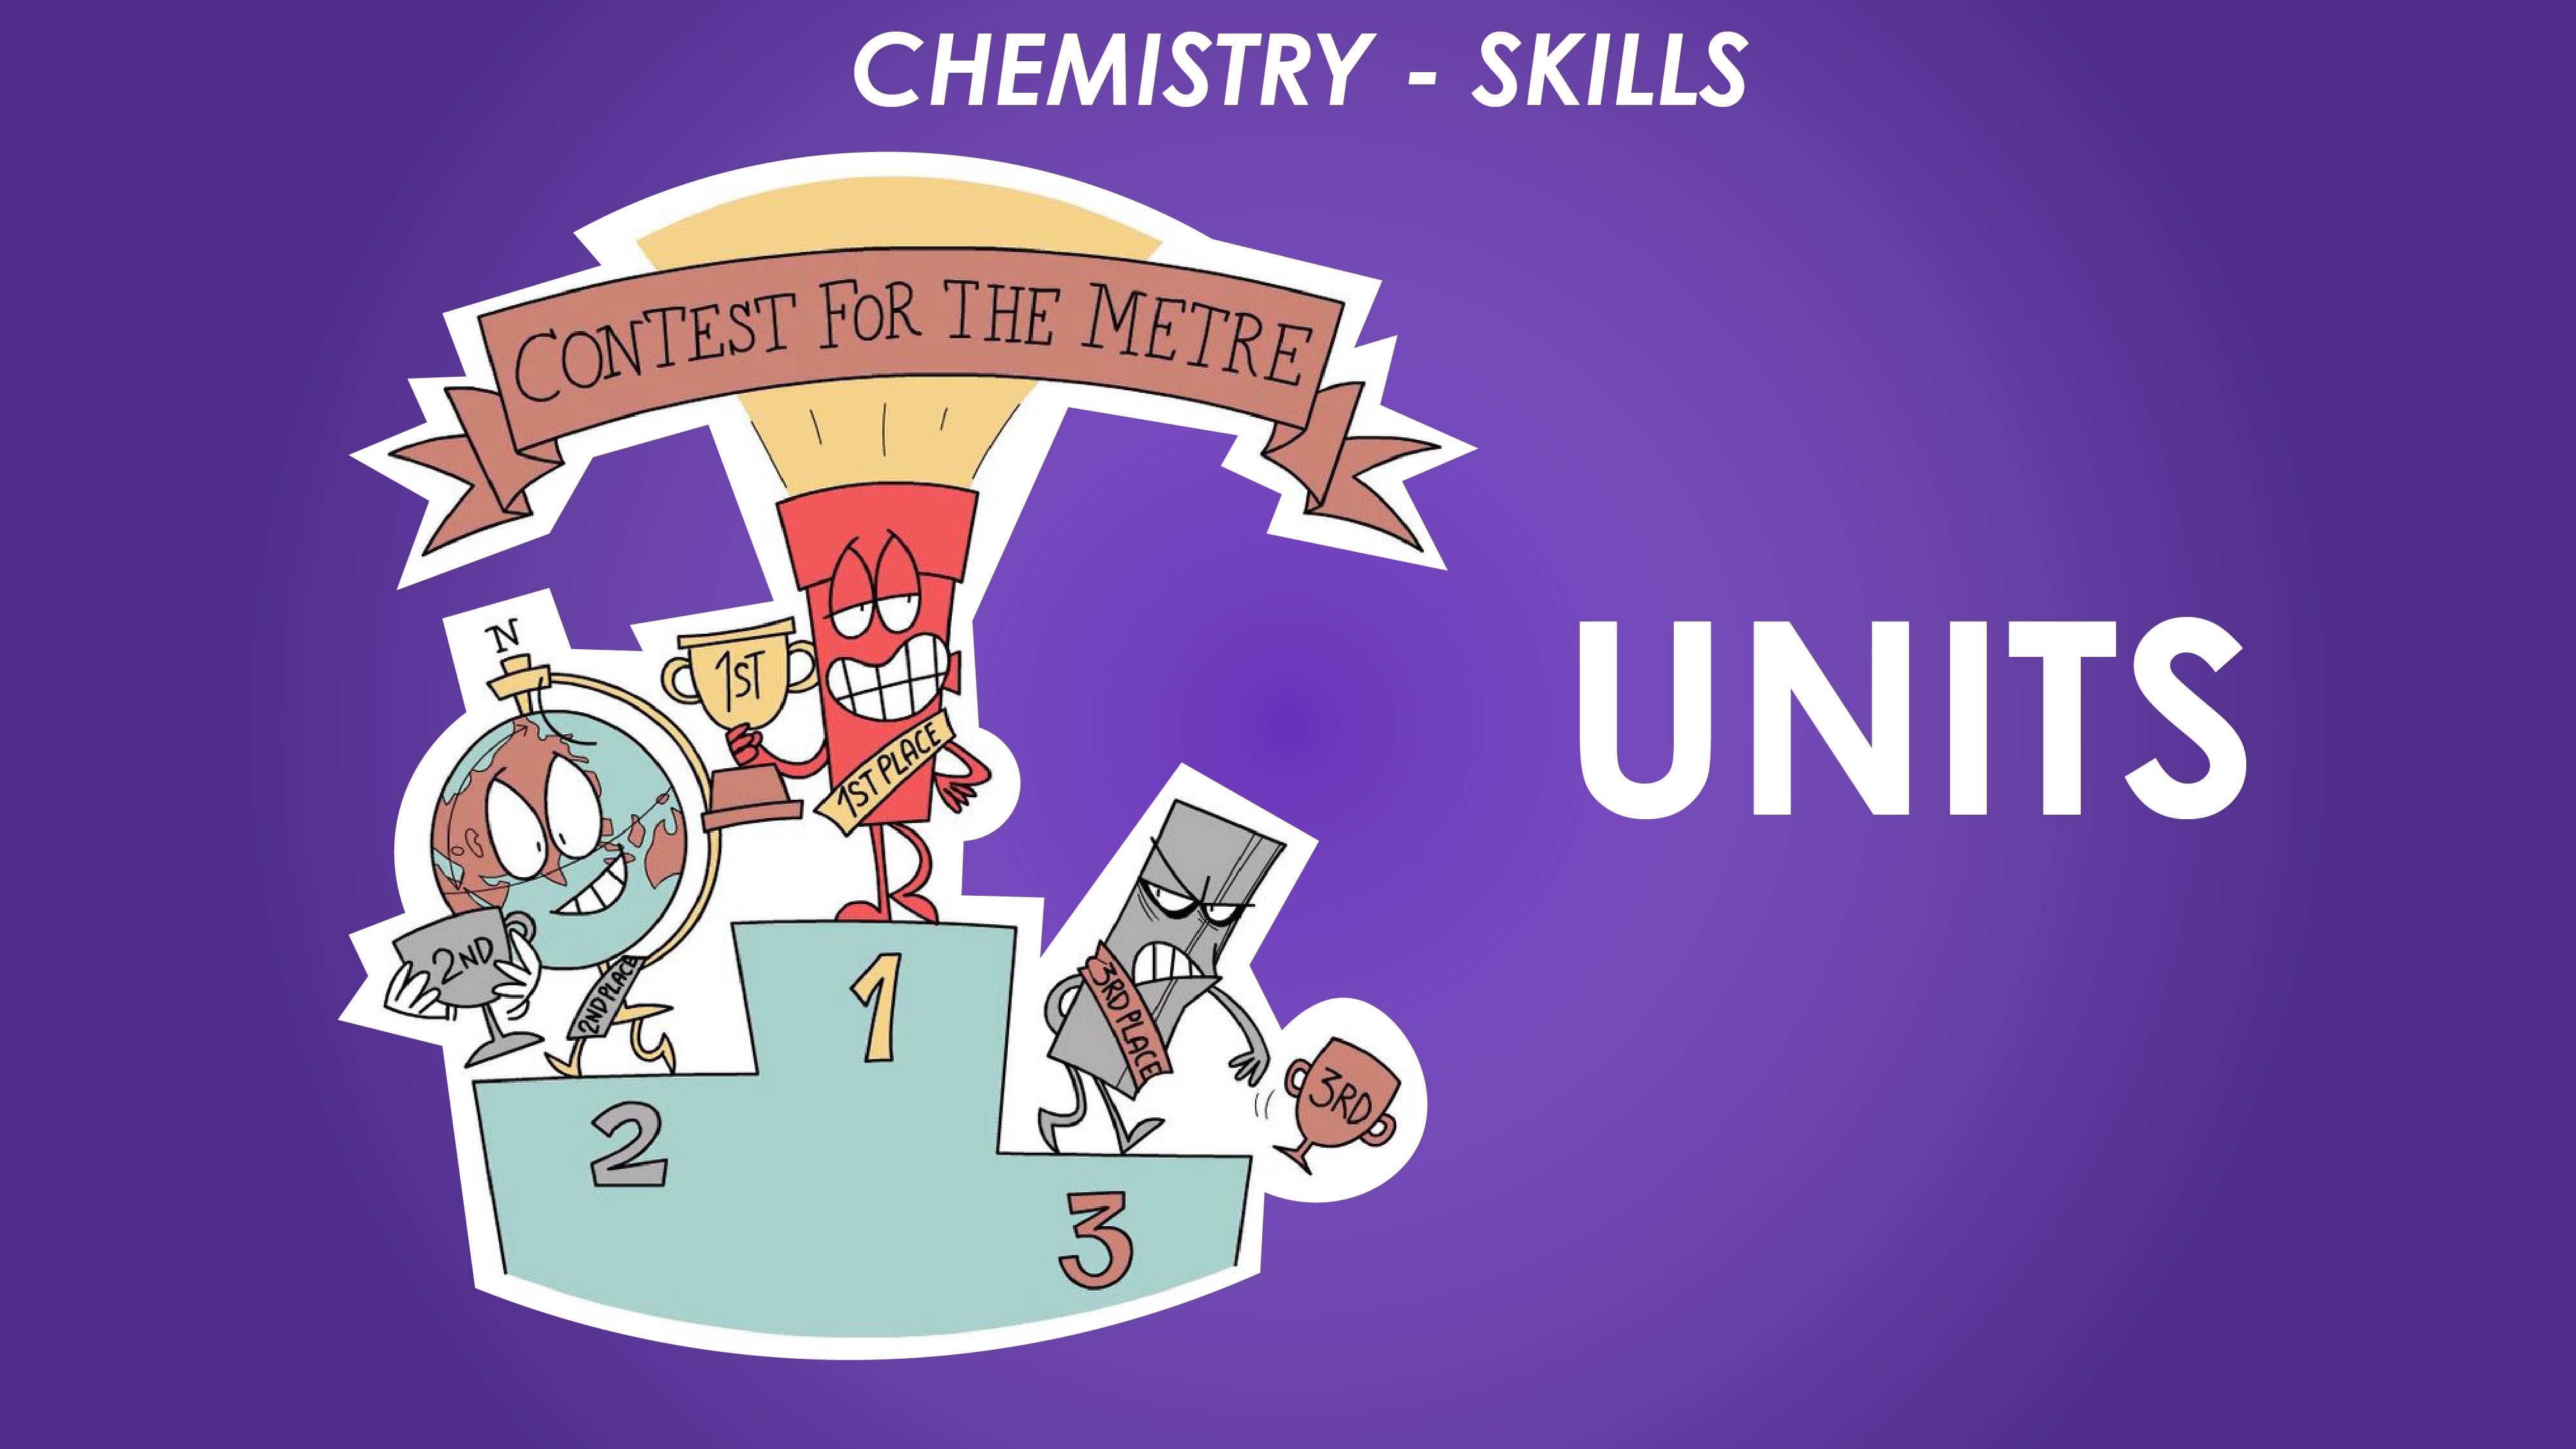 Units - Chemistry Skills